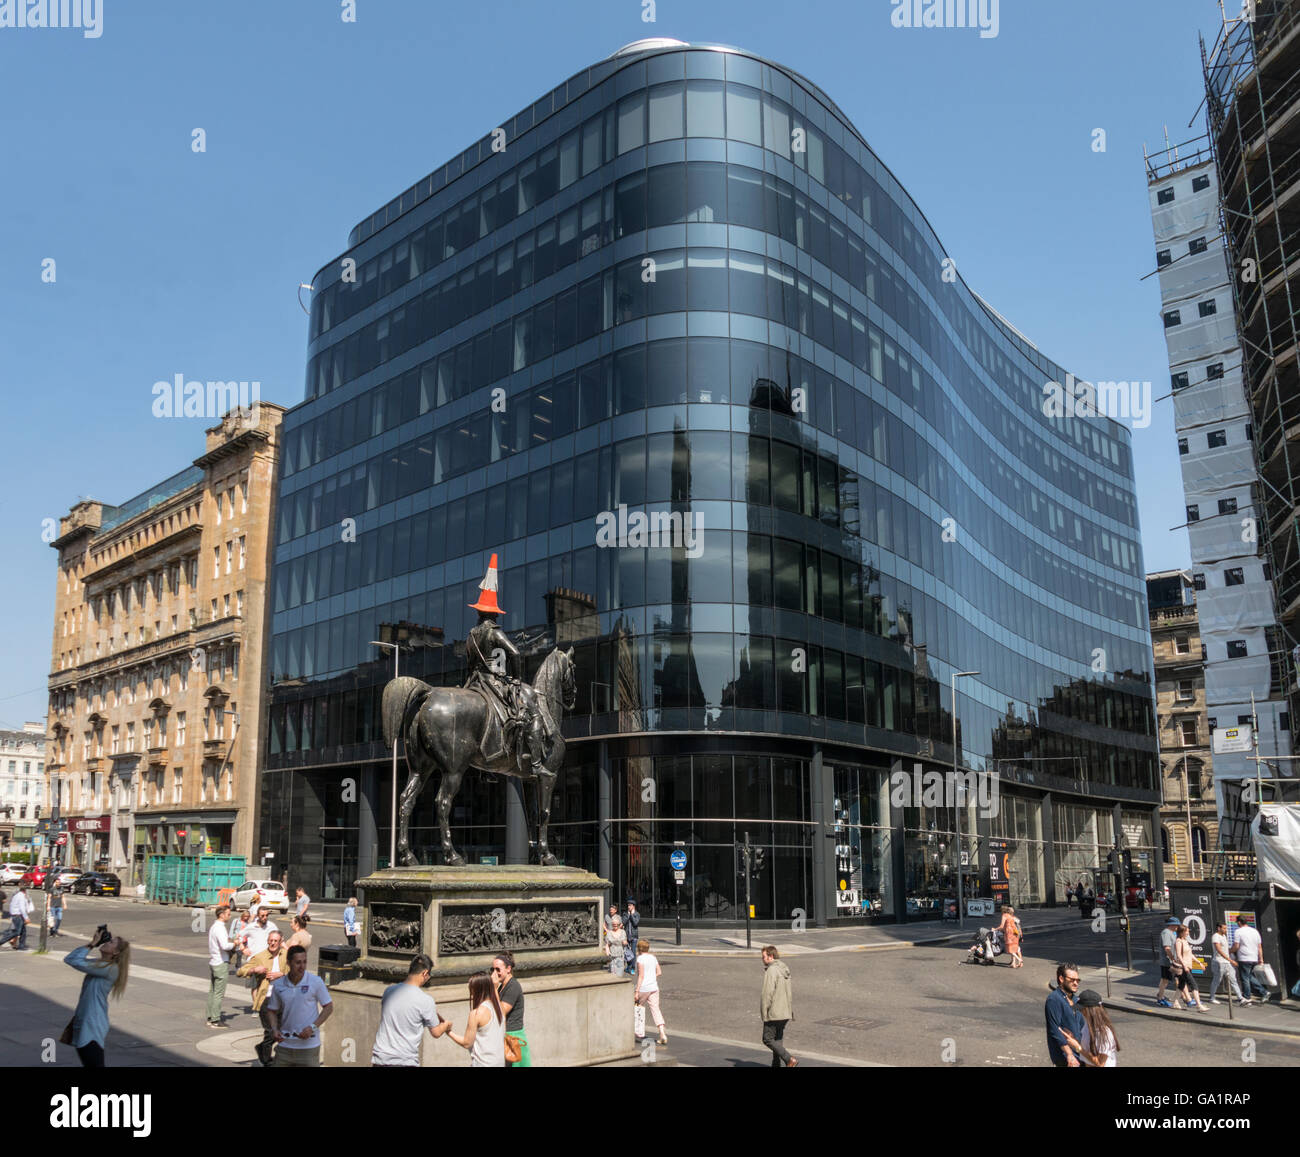 Statue du duc de Wellington avec circulation cône sur la tête, contre l'immeuble de bureaux moderne, Glasgow, Écosse, Royaume-Uni, Banque D'Images